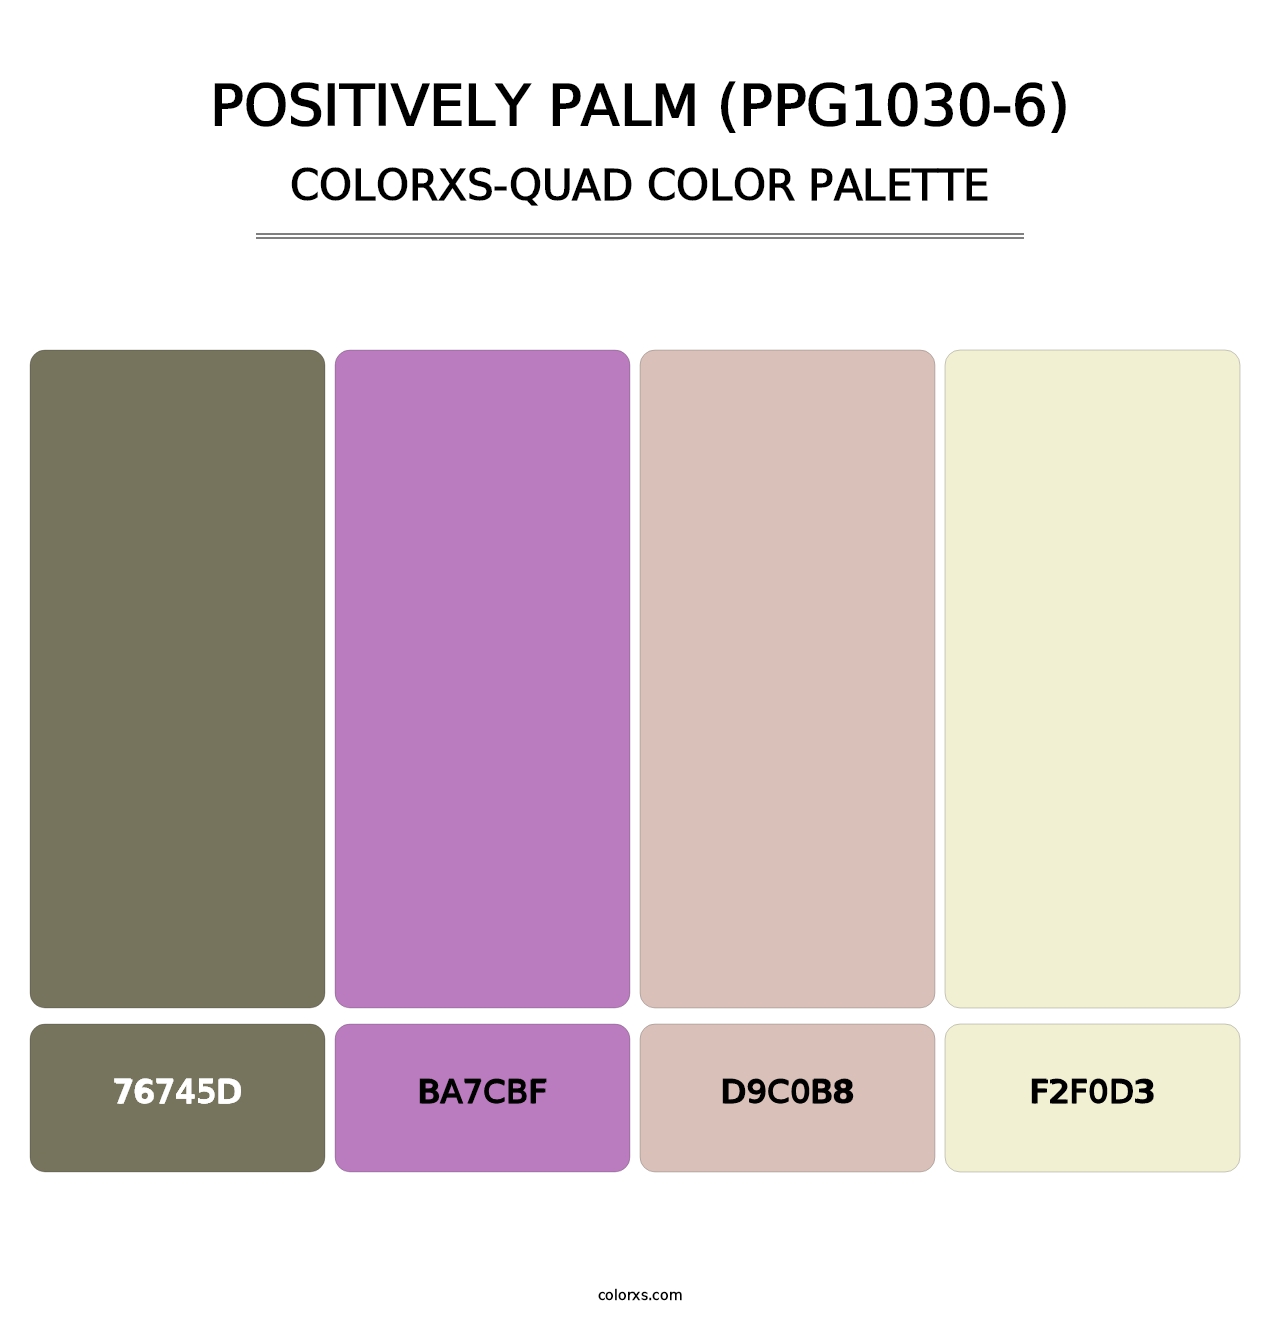 Positively Palm (PPG1030-6) - Colorxs Quad Palette